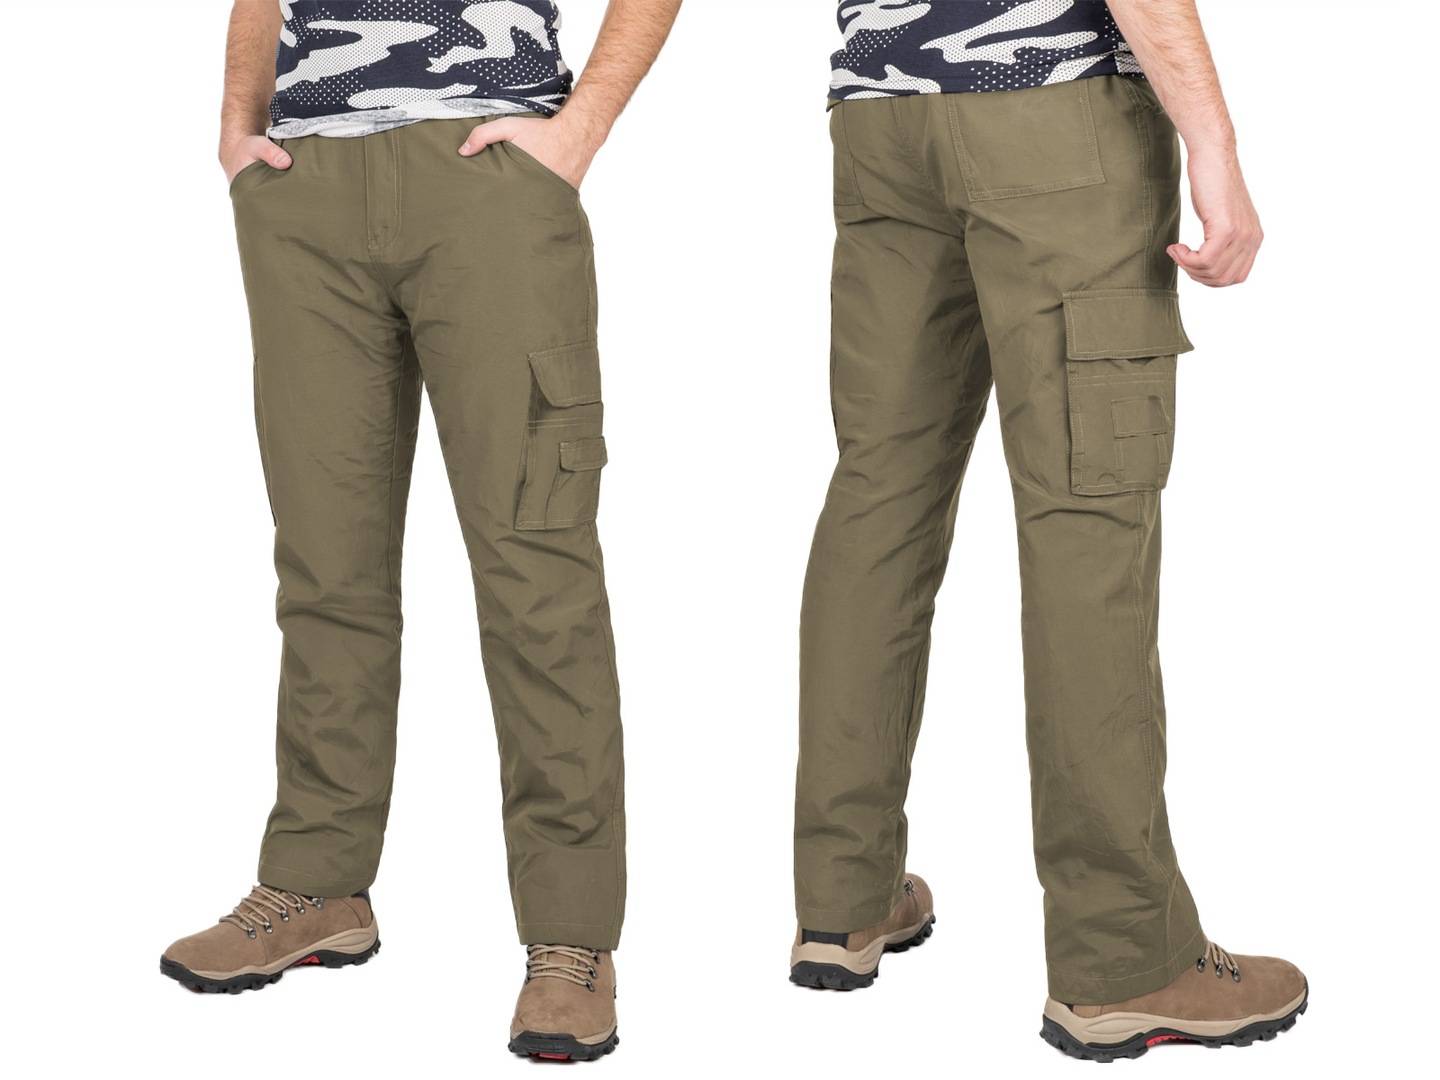 Треккинговые брюки: как выбрать женские и мужские штаны для треккинга? зимние утепленные, летние и другие модели